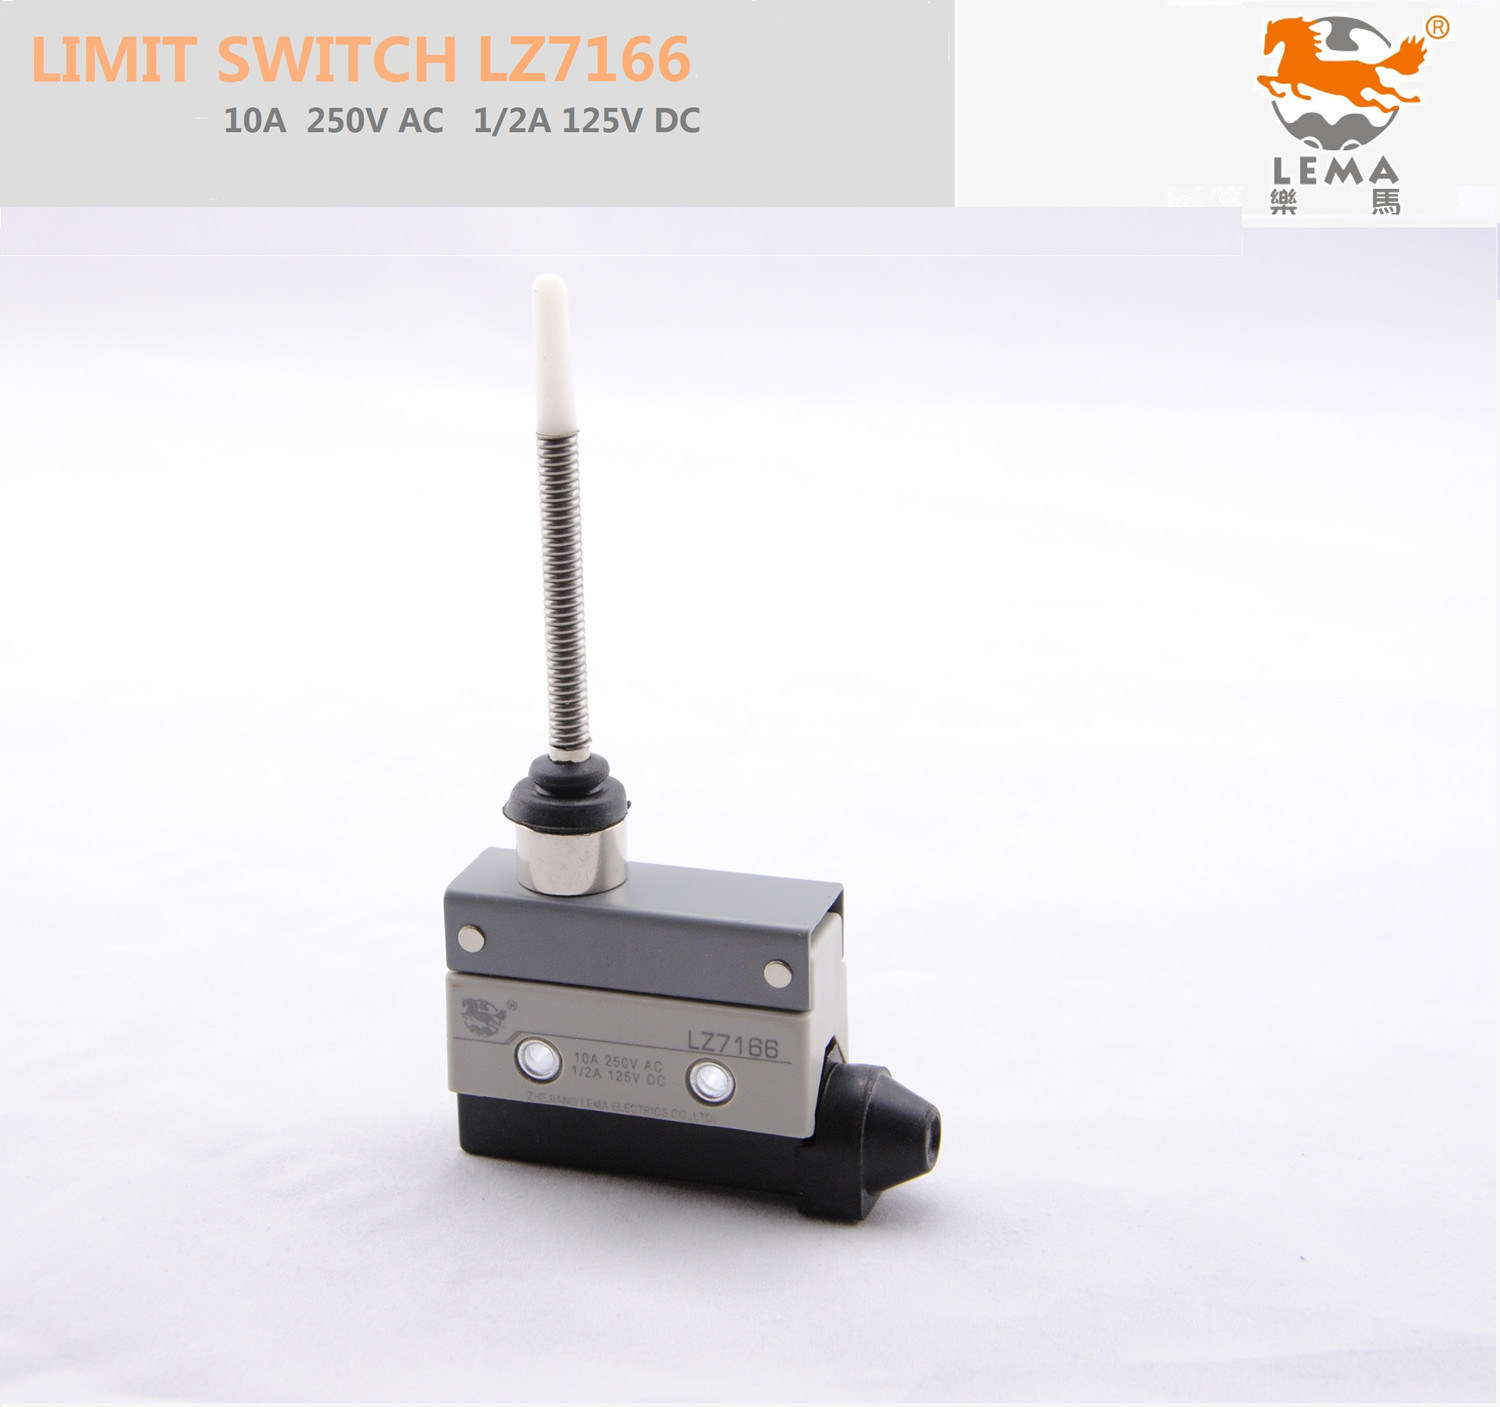 Lema AC Current Limit Switch Lz7166